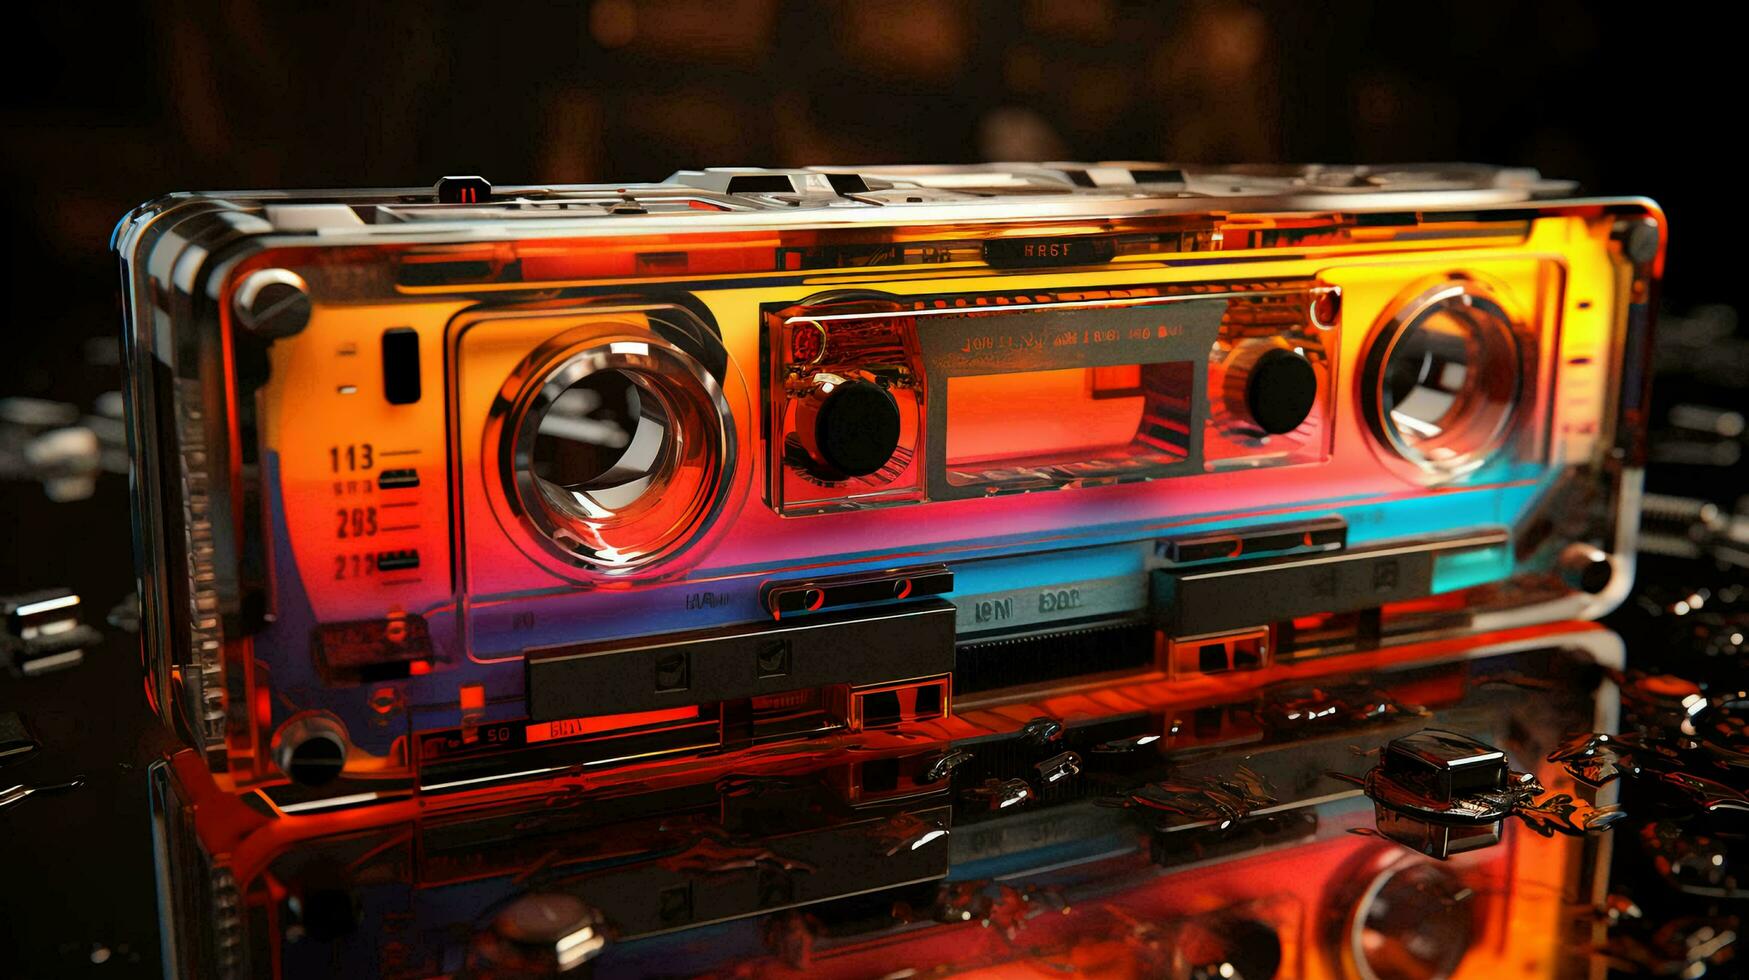 vecchio elegante Vintage ▾ retrò Audio cassetta manifesto a partire dal il anni 80 anni 90 foto